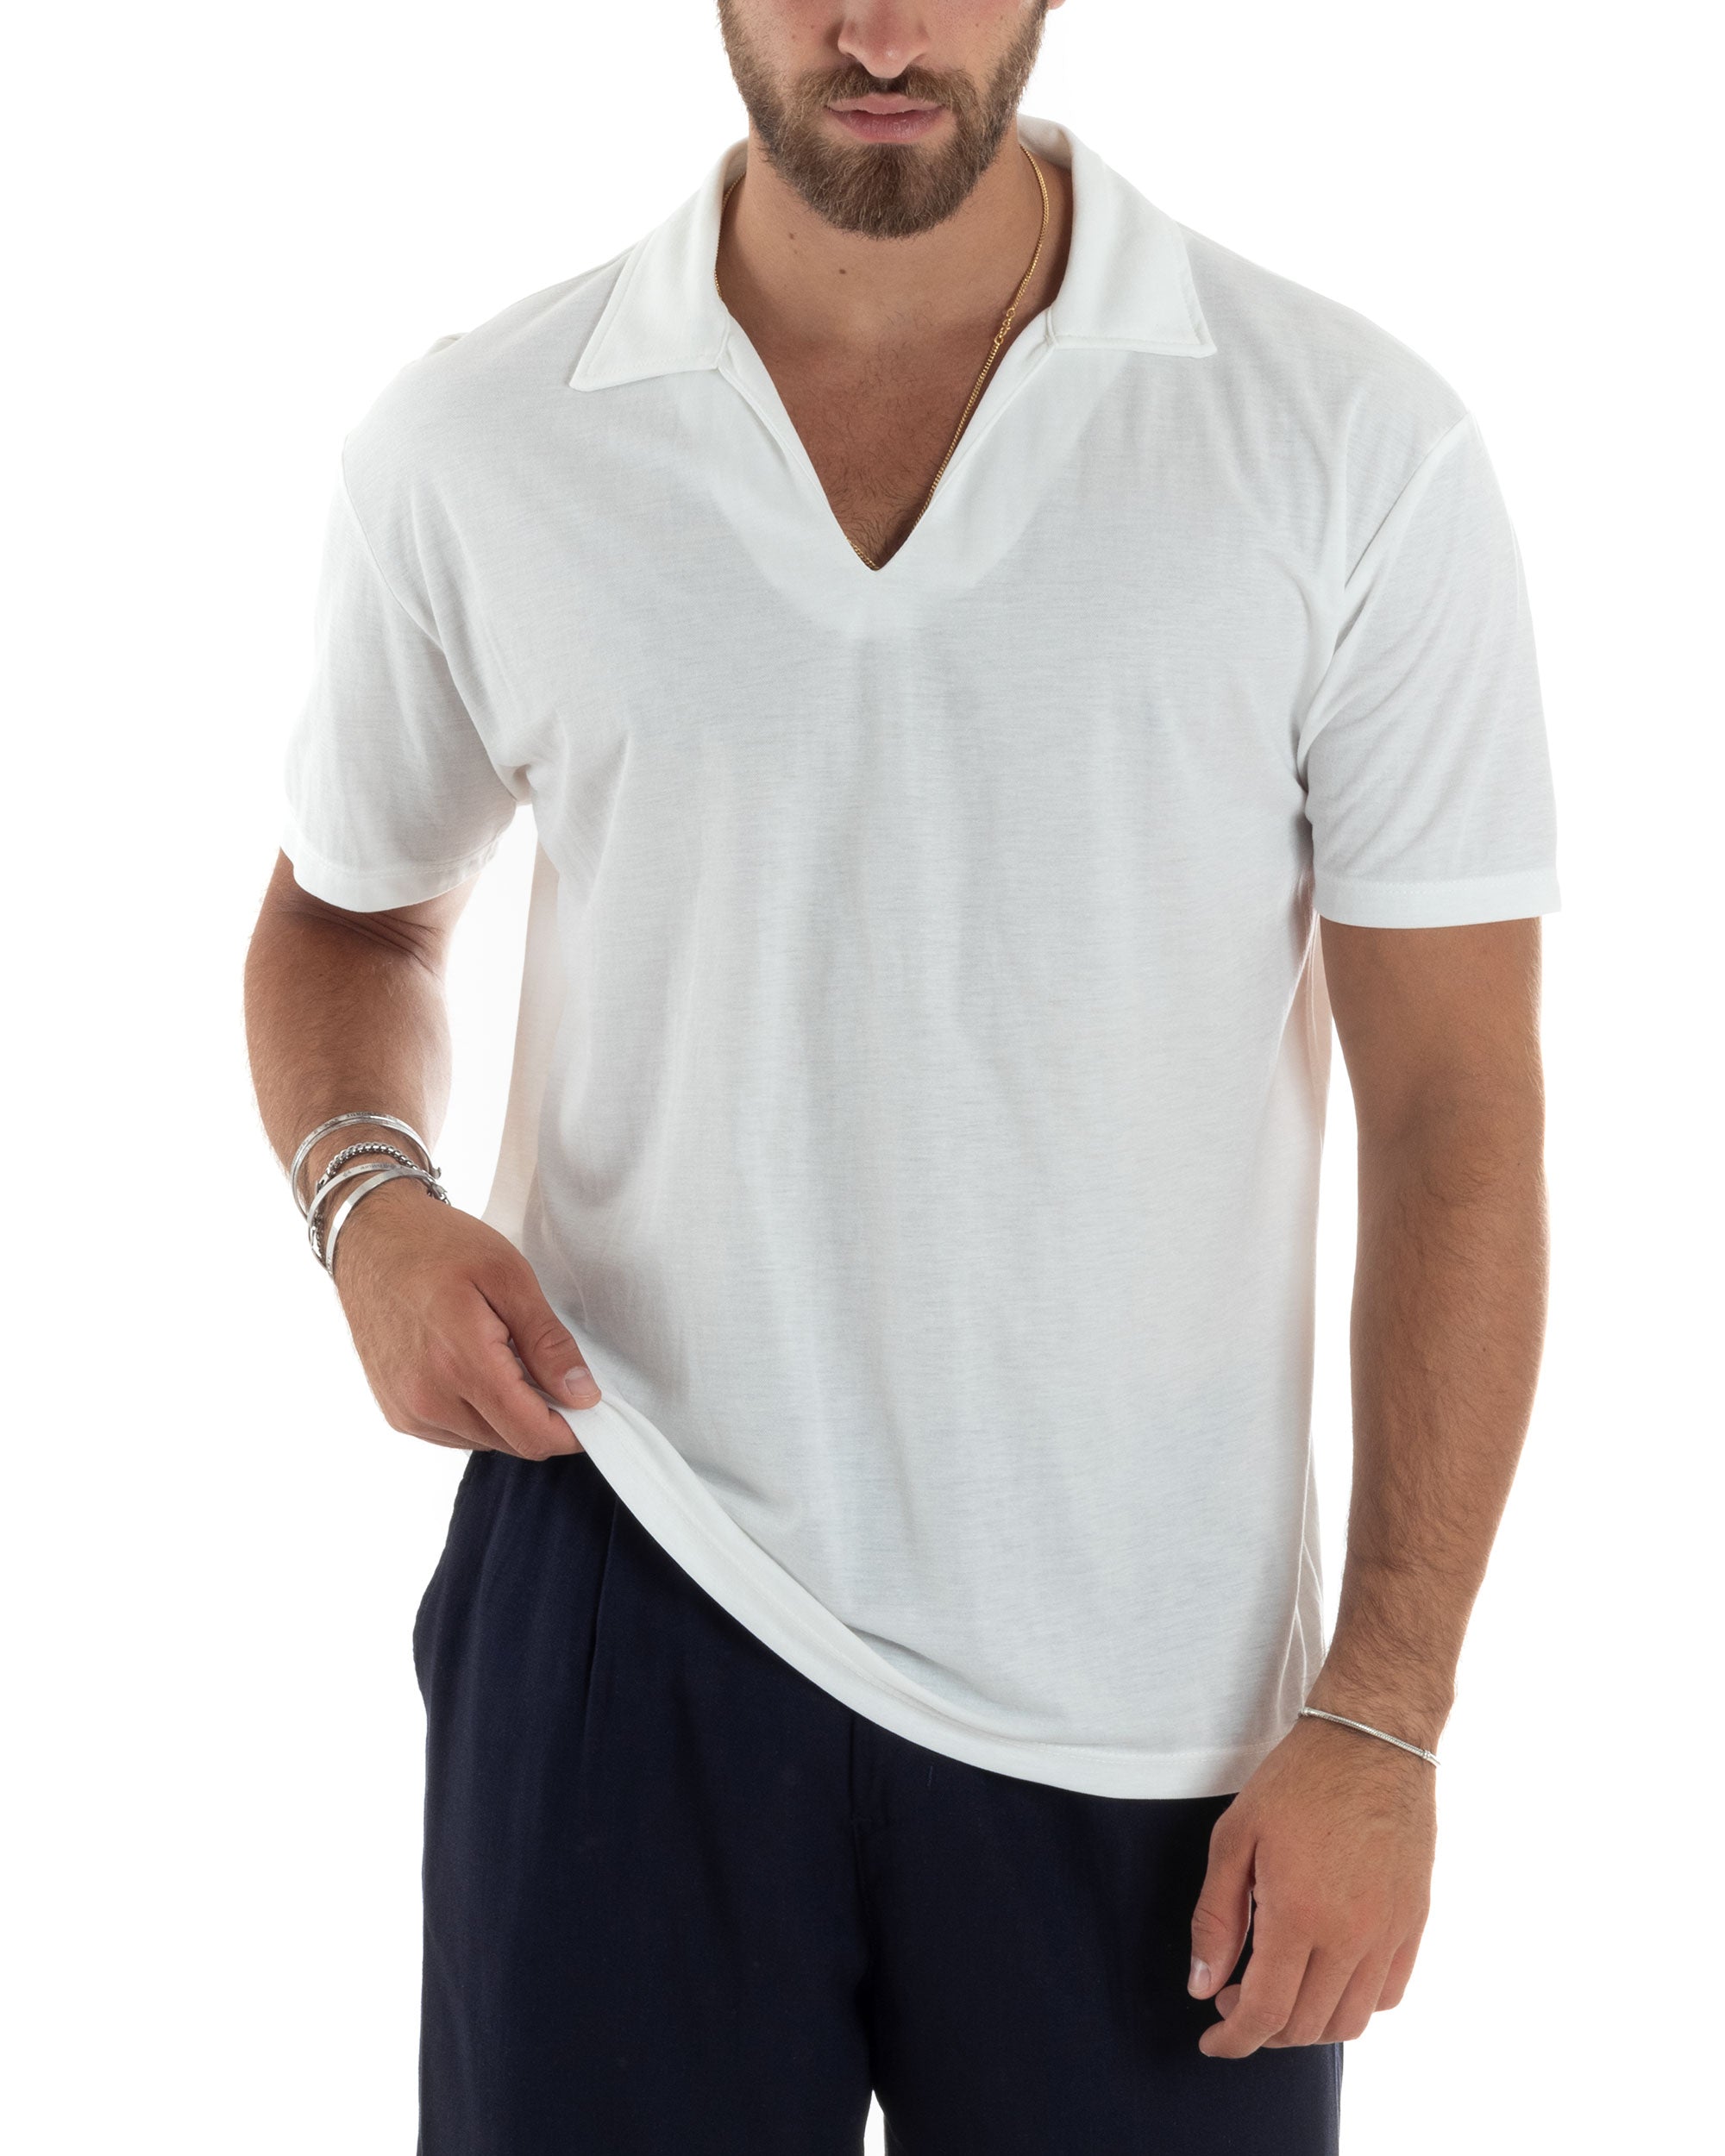 Polo Mezze Maniche Uomo Basic Scollo A V T-Shirt Con Colletto Tinta Unita Bianco GIOSAL-TS3071A